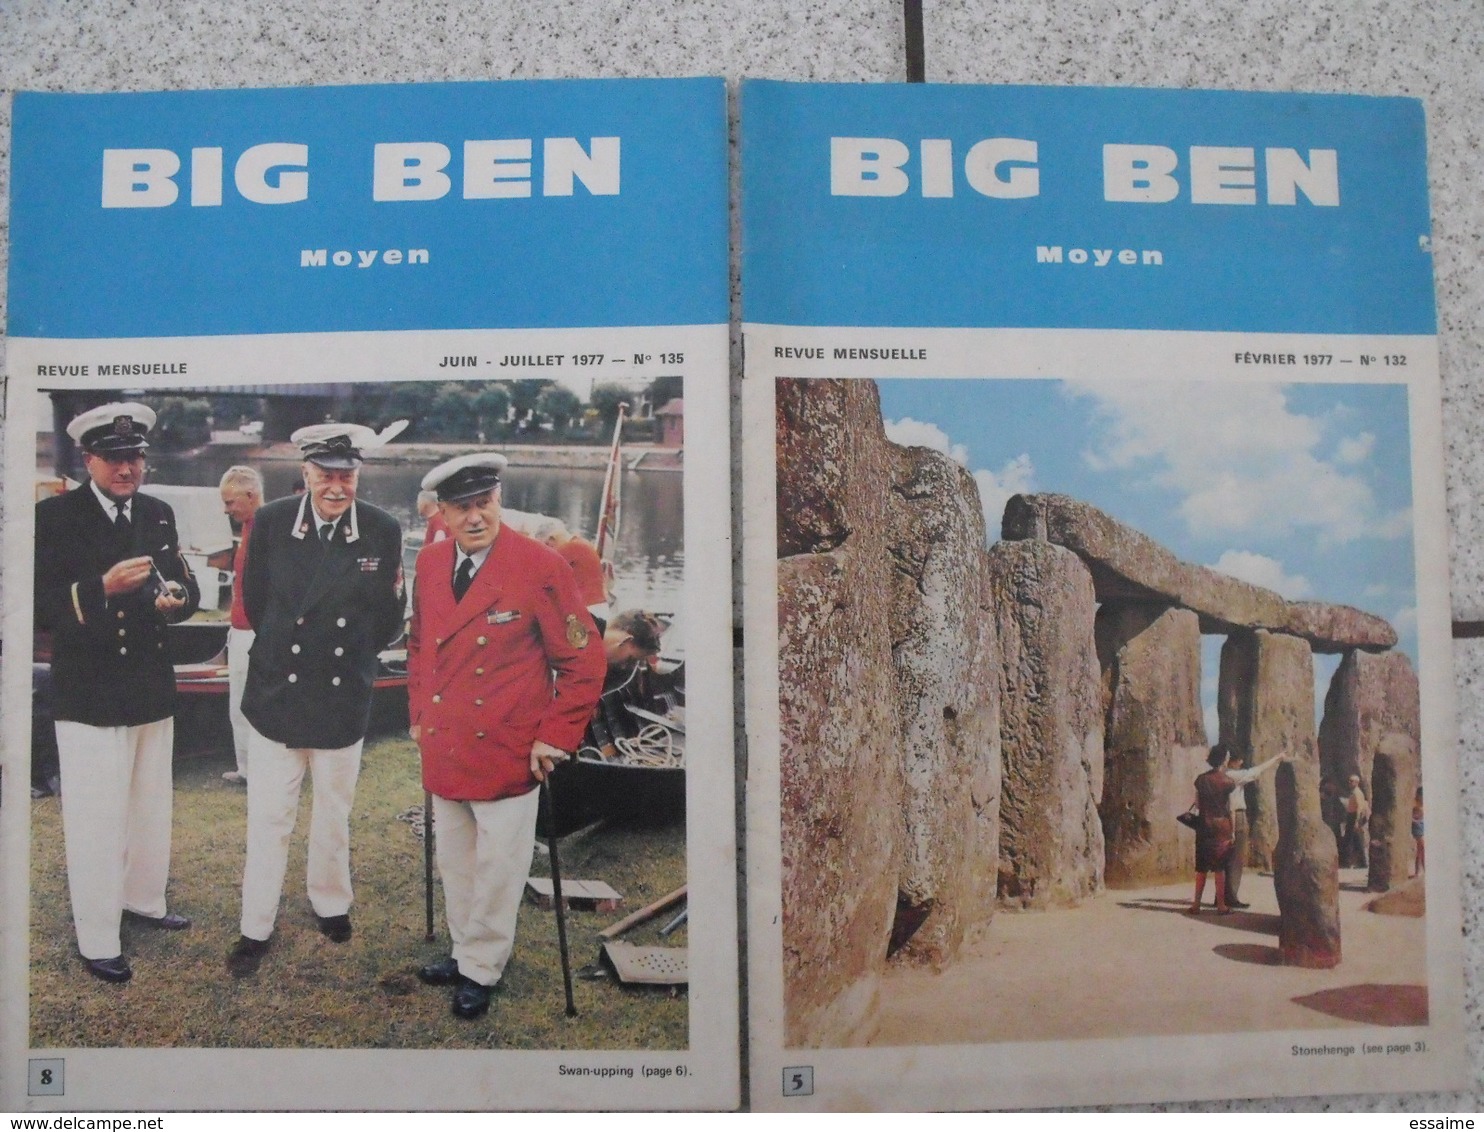 15 revues Big Ben, English-French Magazine. revue pédagogique1974-1984